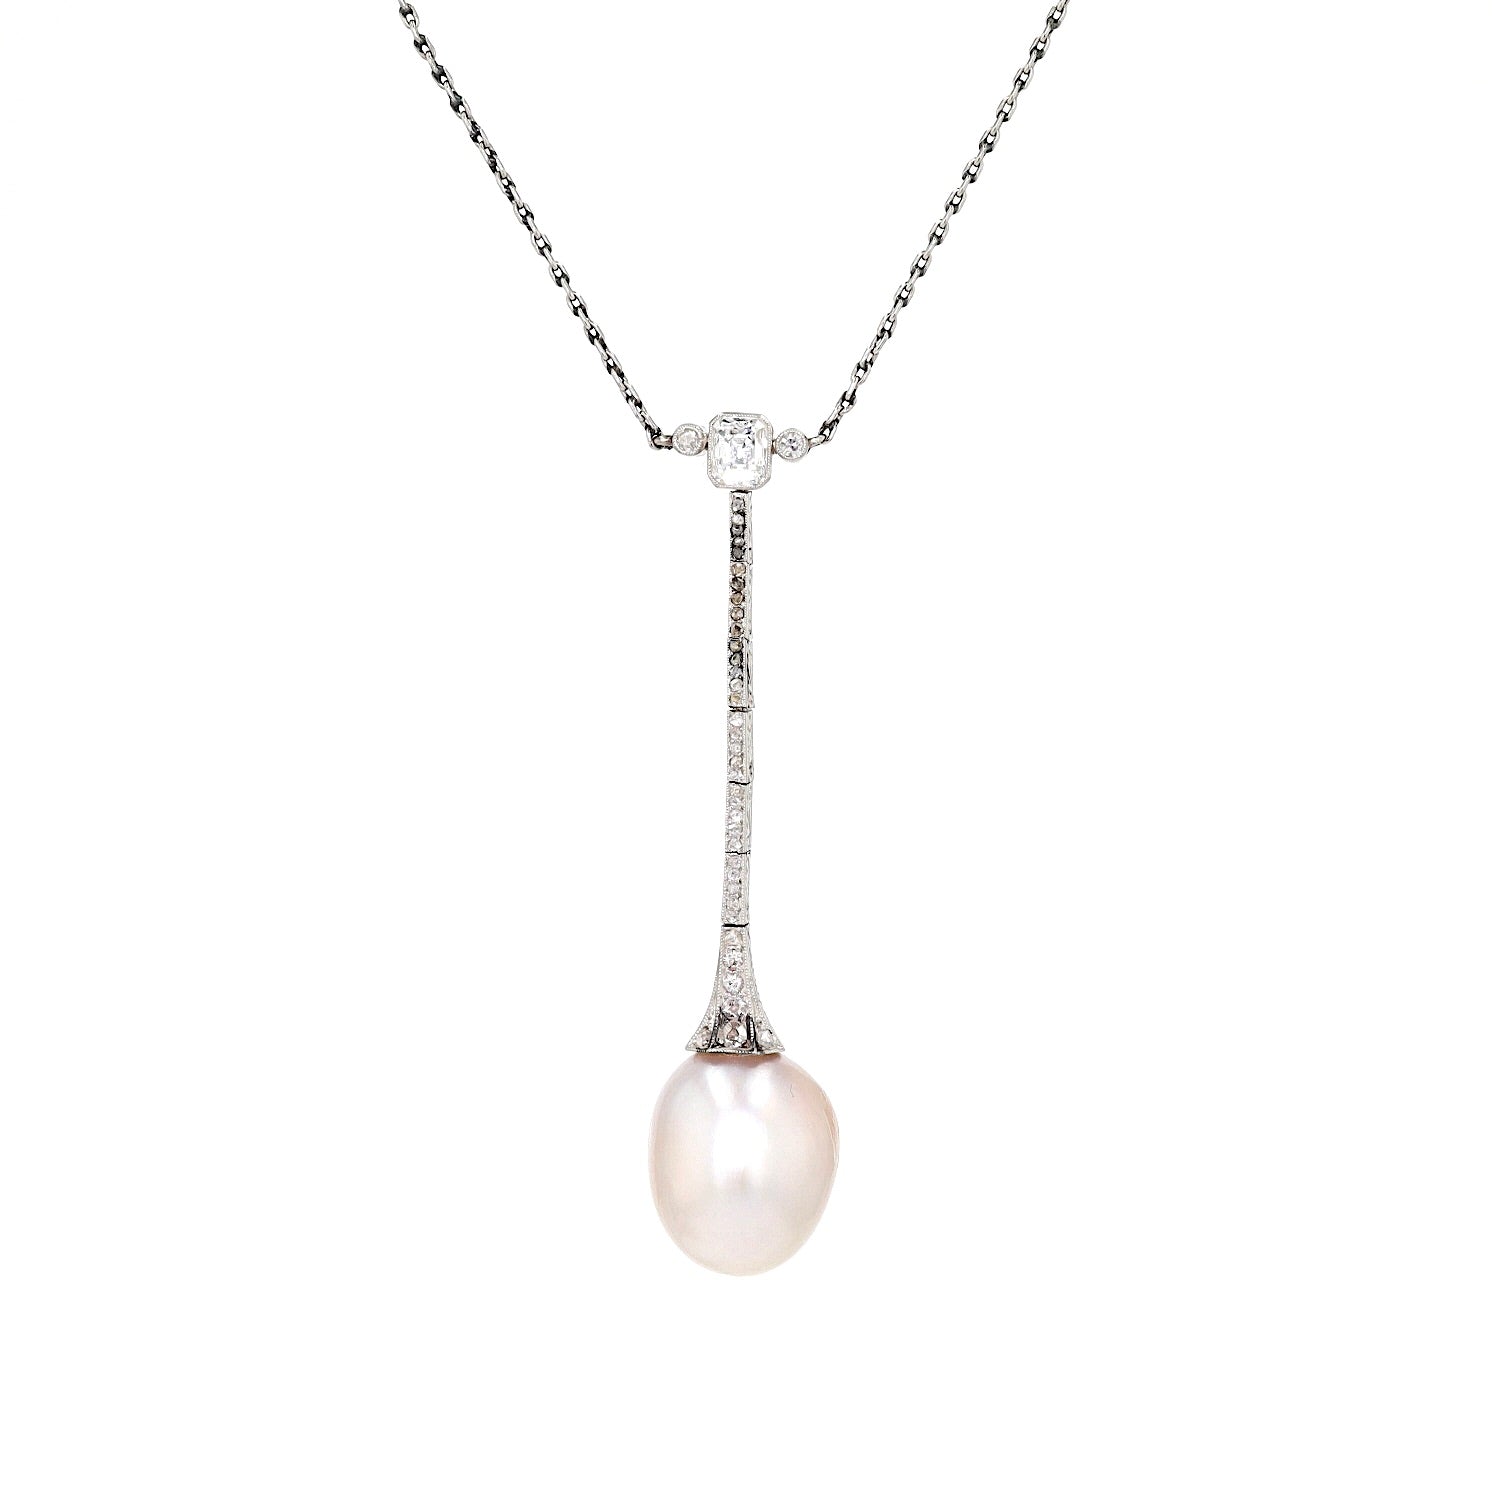 Art Deco Collier aus Platin mit einer großen natürlichen Perle und Diamanten